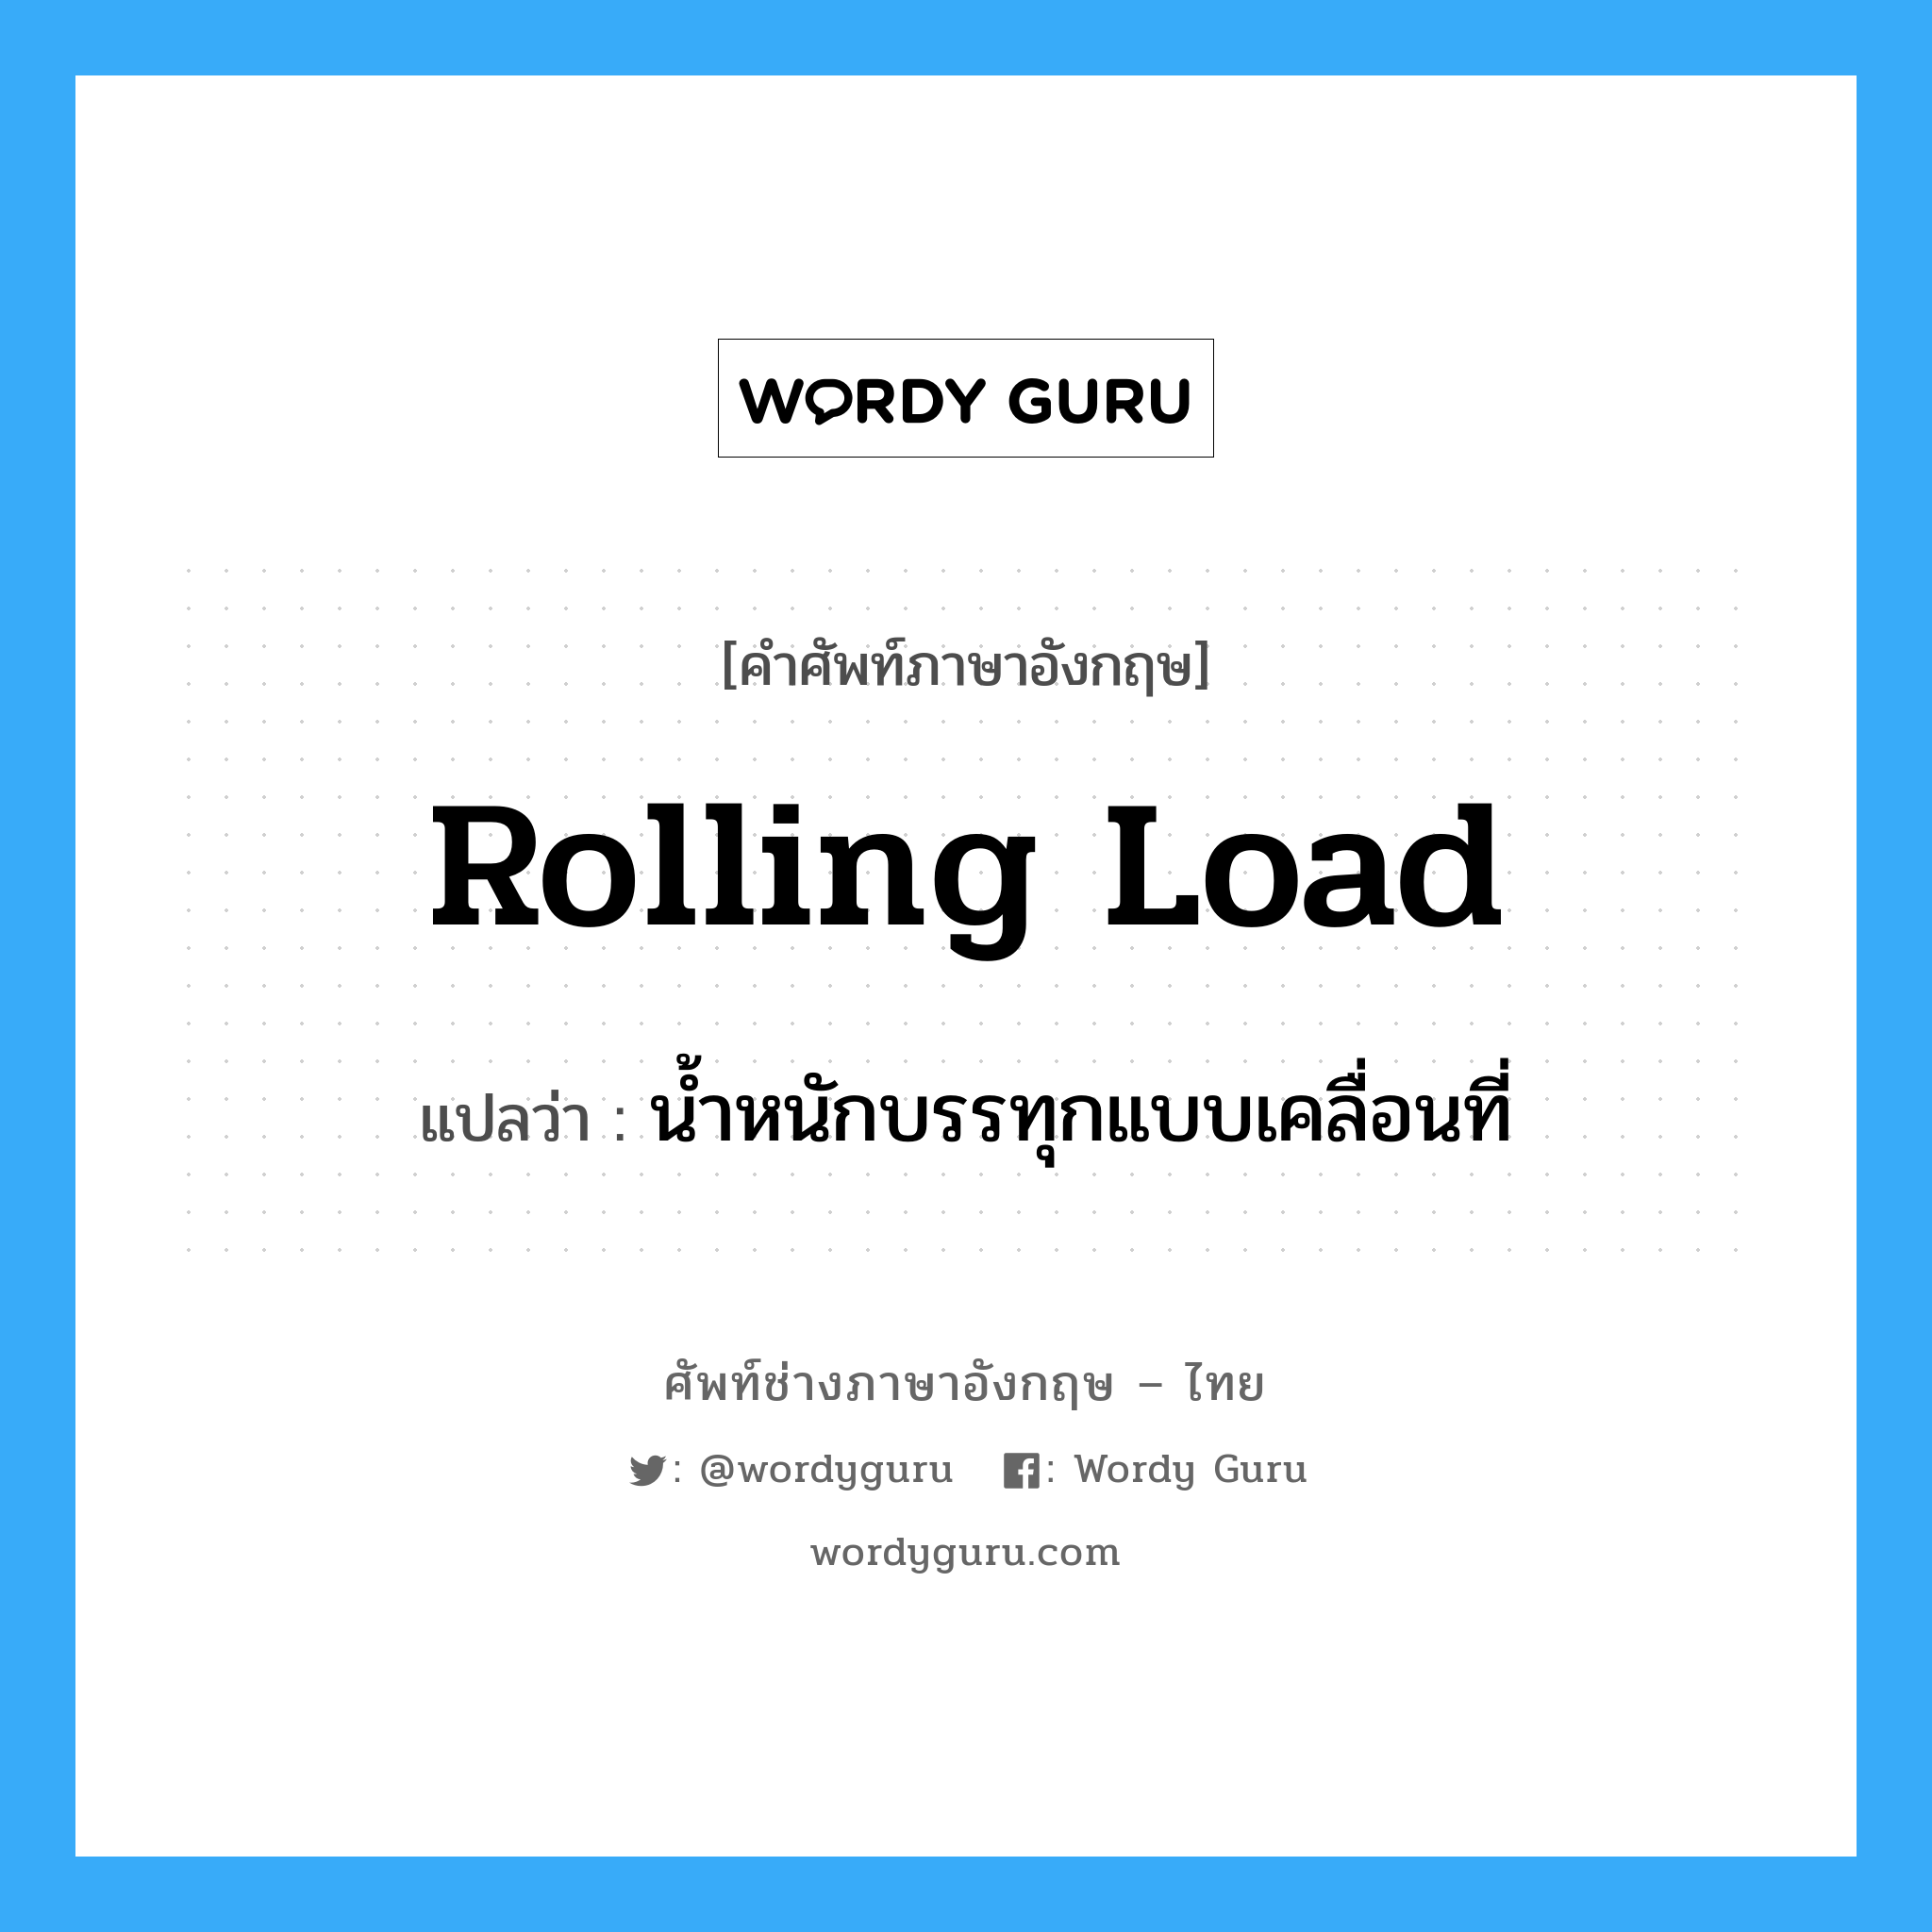 น้ำหนักบรรทุกแบบเคลื่อนที่ ภาษาอังกฤษ?, คำศัพท์ช่างภาษาอังกฤษ - ไทย น้ำหนักบรรทุกแบบเคลื่อนที่ คำศัพท์ภาษาอังกฤษ น้ำหนักบรรทุกแบบเคลื่อนที่ แปลว่า rolling load